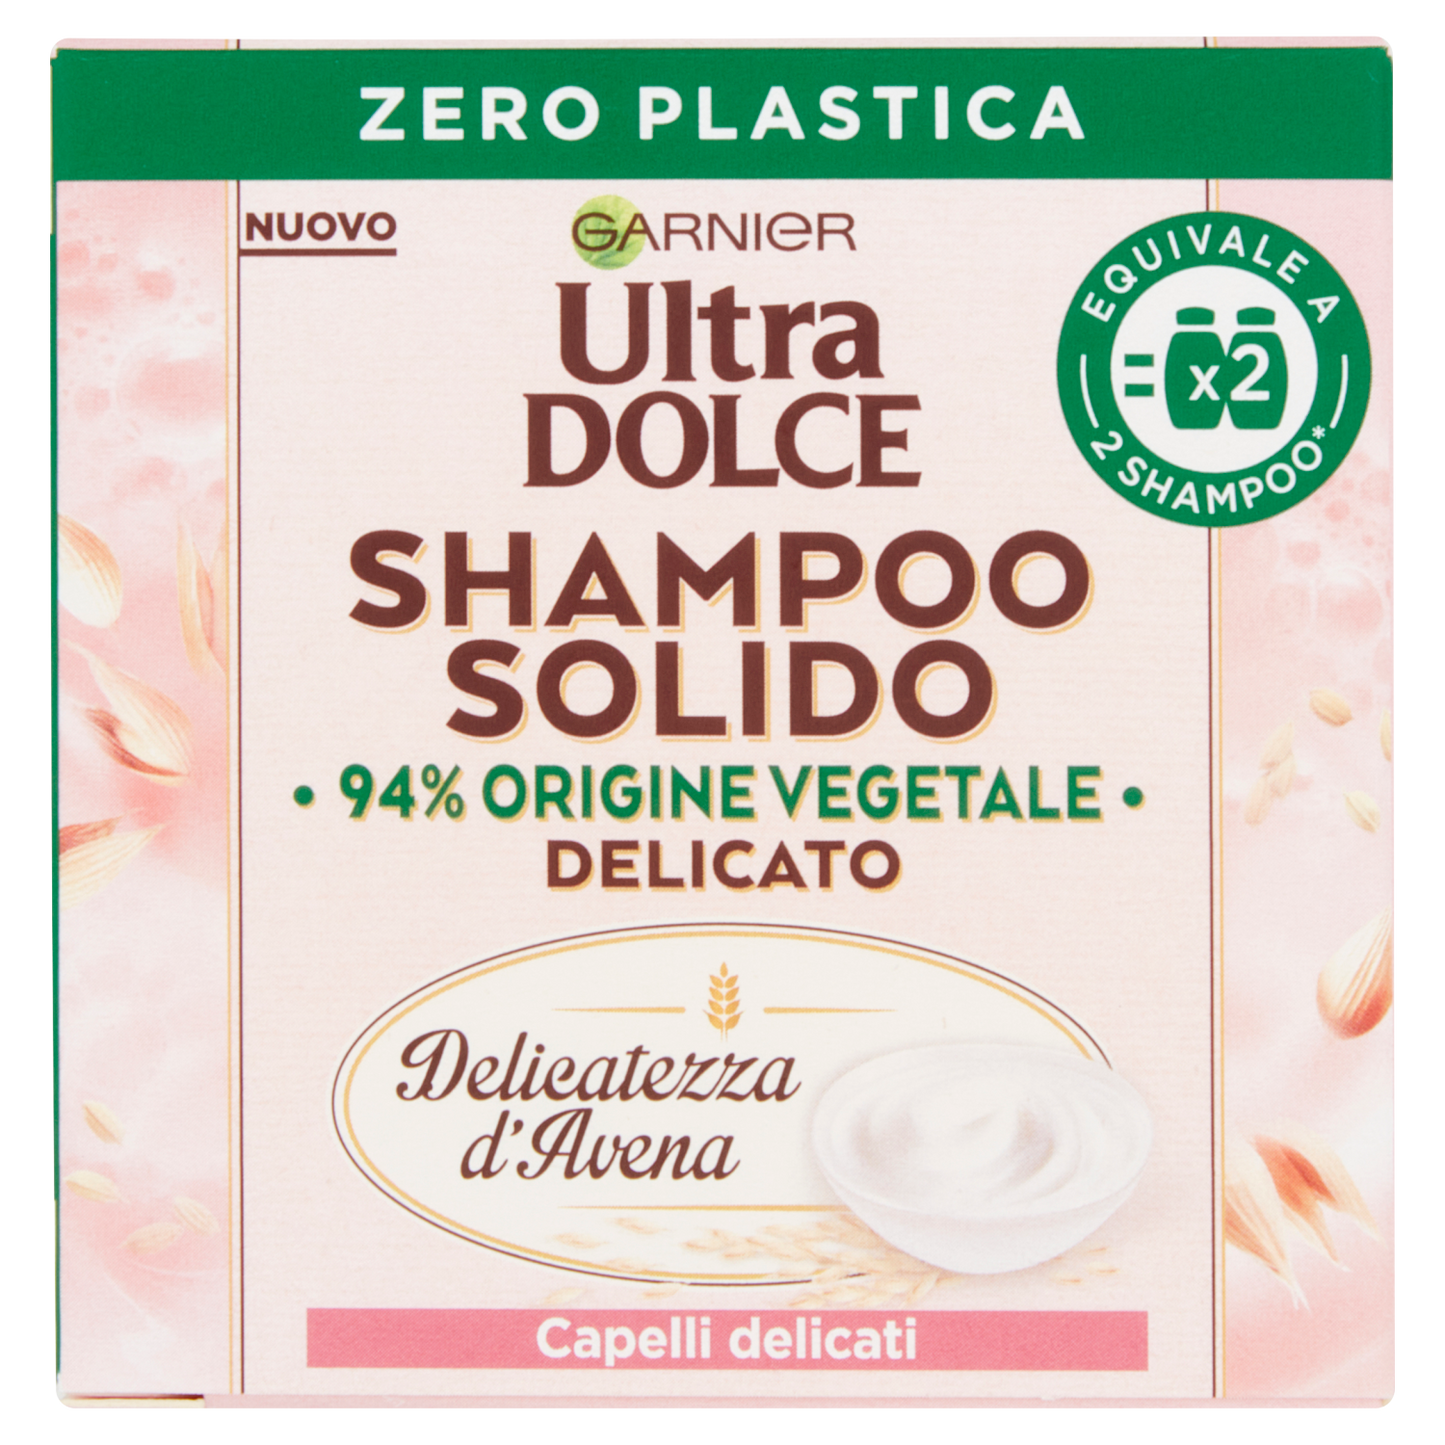 Ultra Dolce Shampoo Solido Delicatezza d'Avena